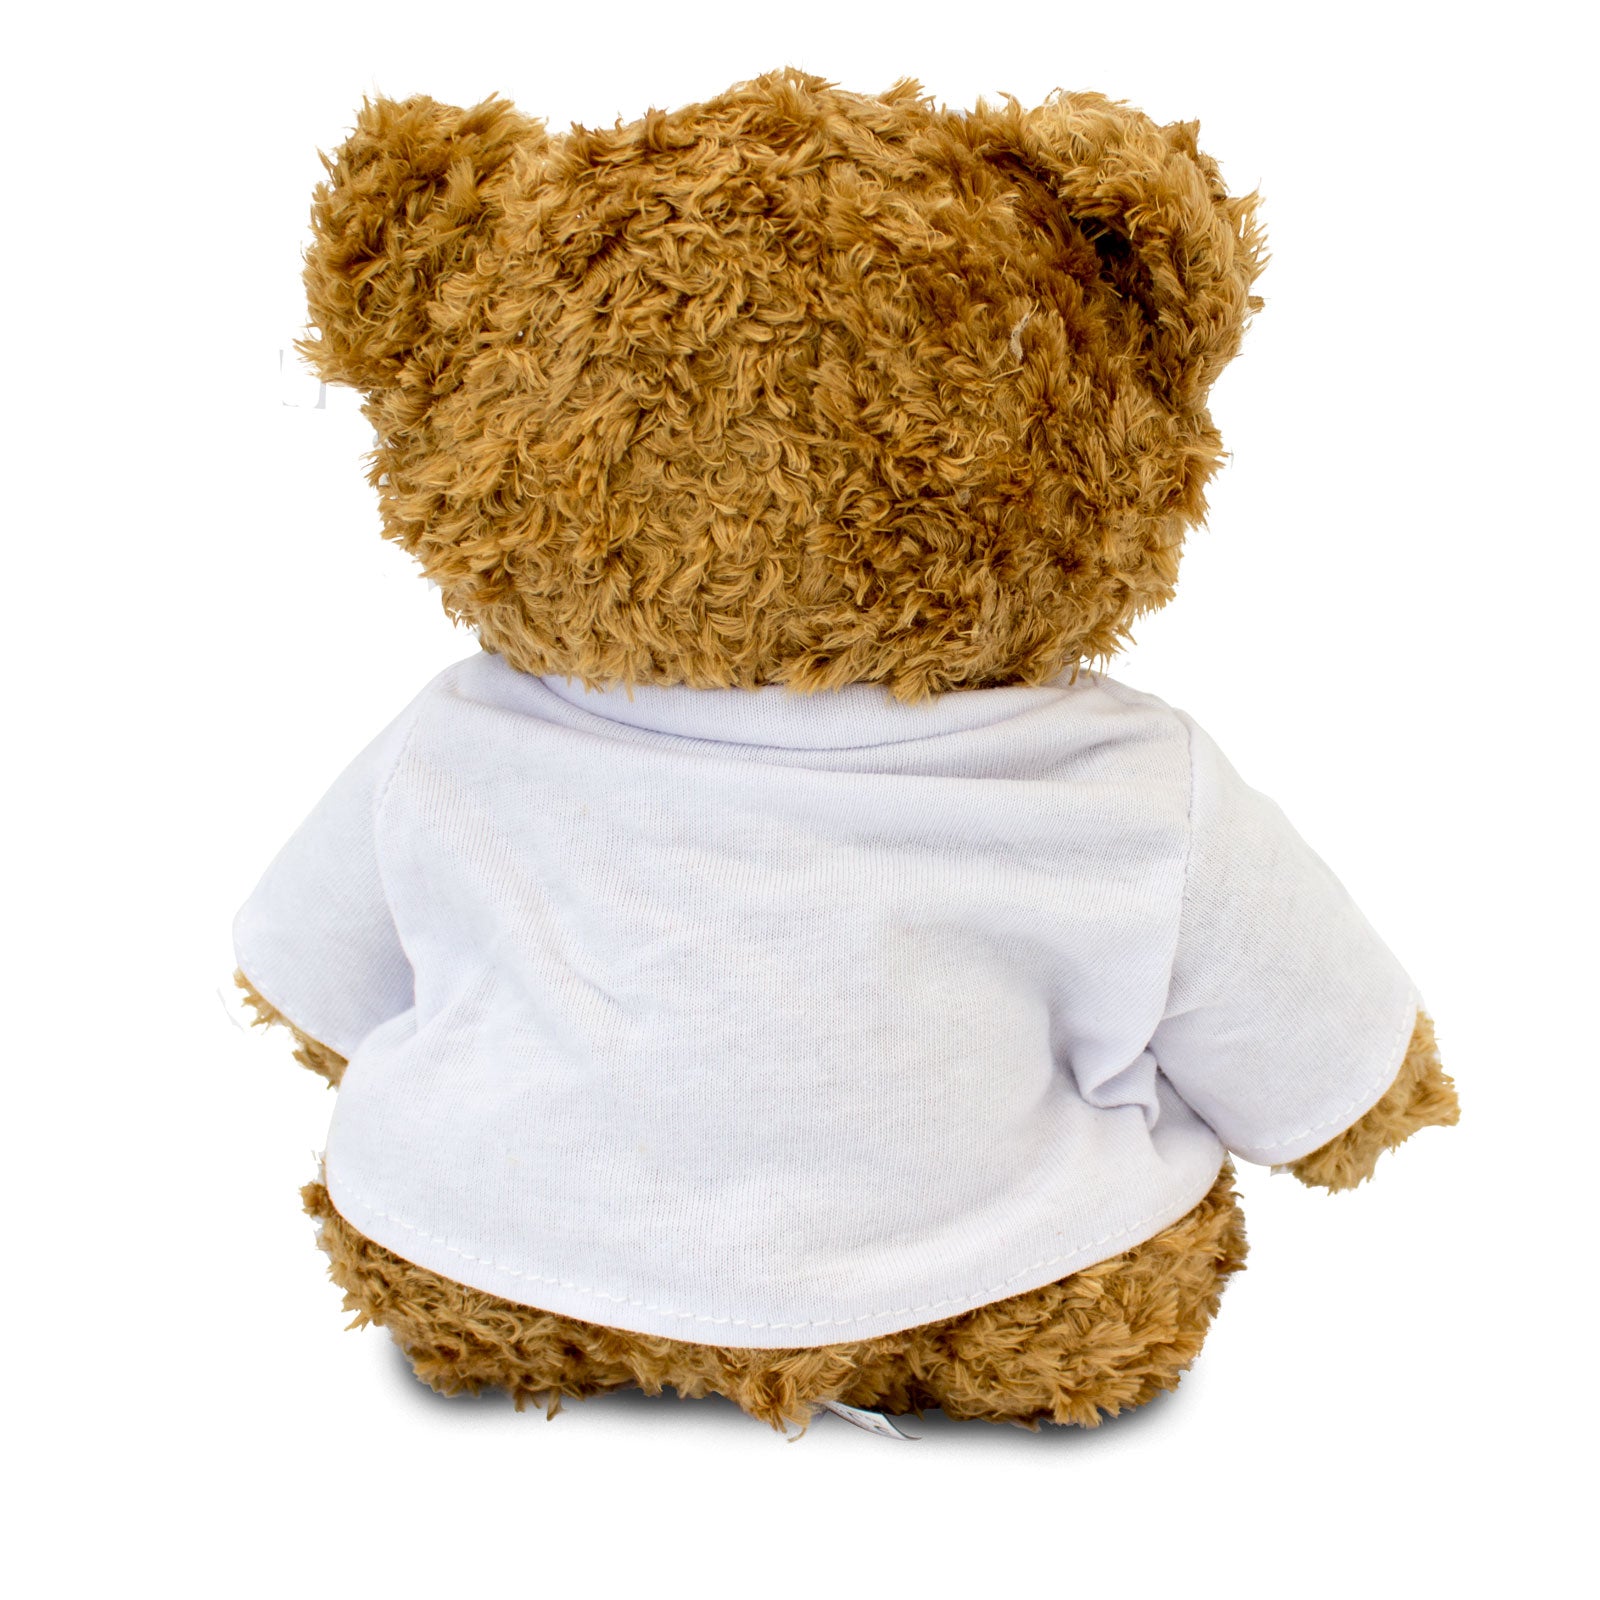 Get Well Soon Jeovanna - Teddy Bear